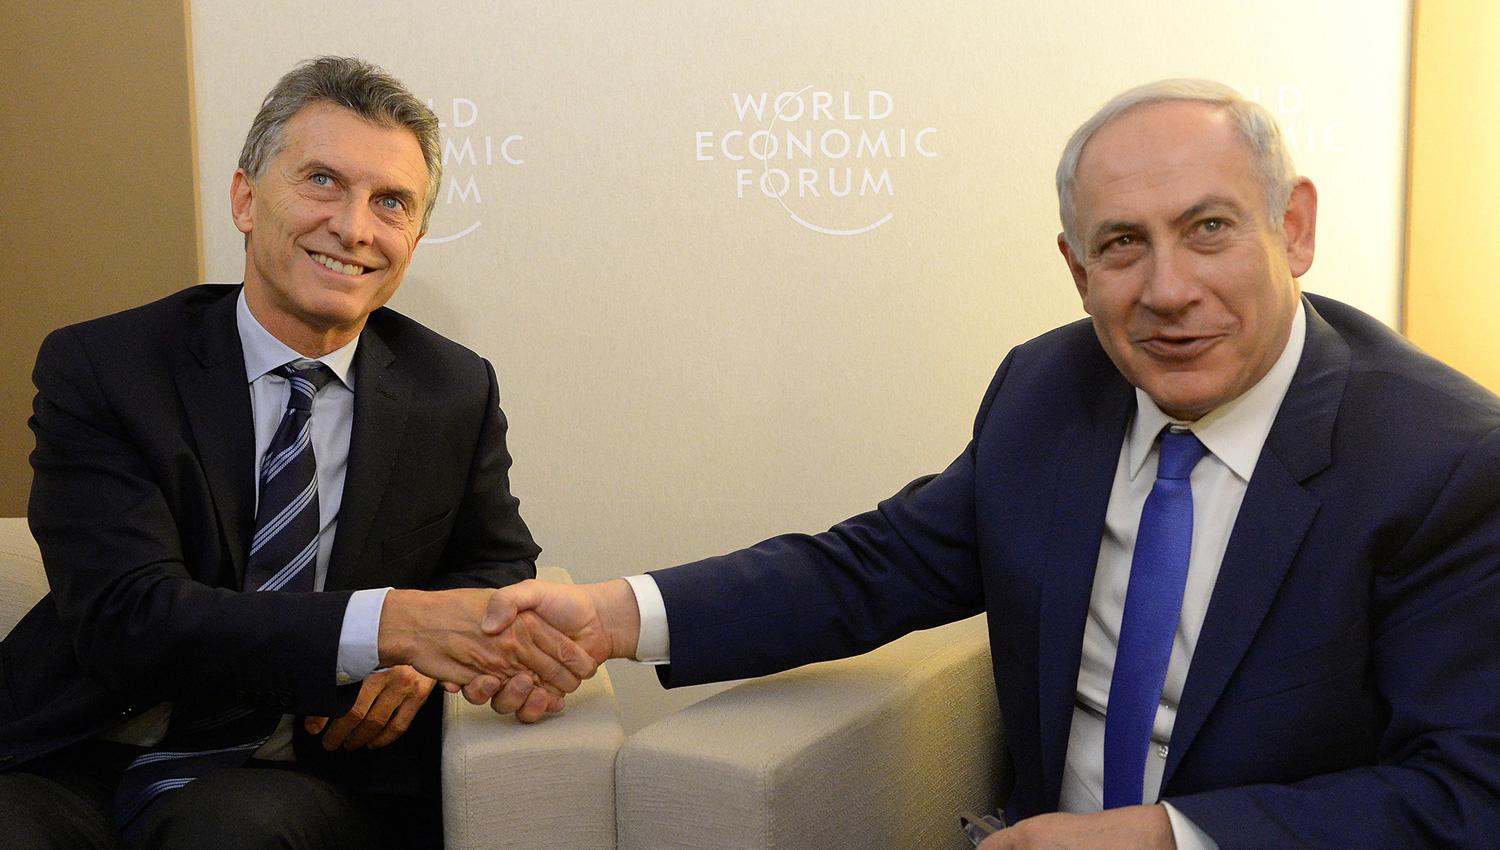 CUESTIÓN DE PODER. Macri y Netanyahu coincidieron hace dos años en Davos, durante el encuentro de World Economic Forum. ARCHIVO